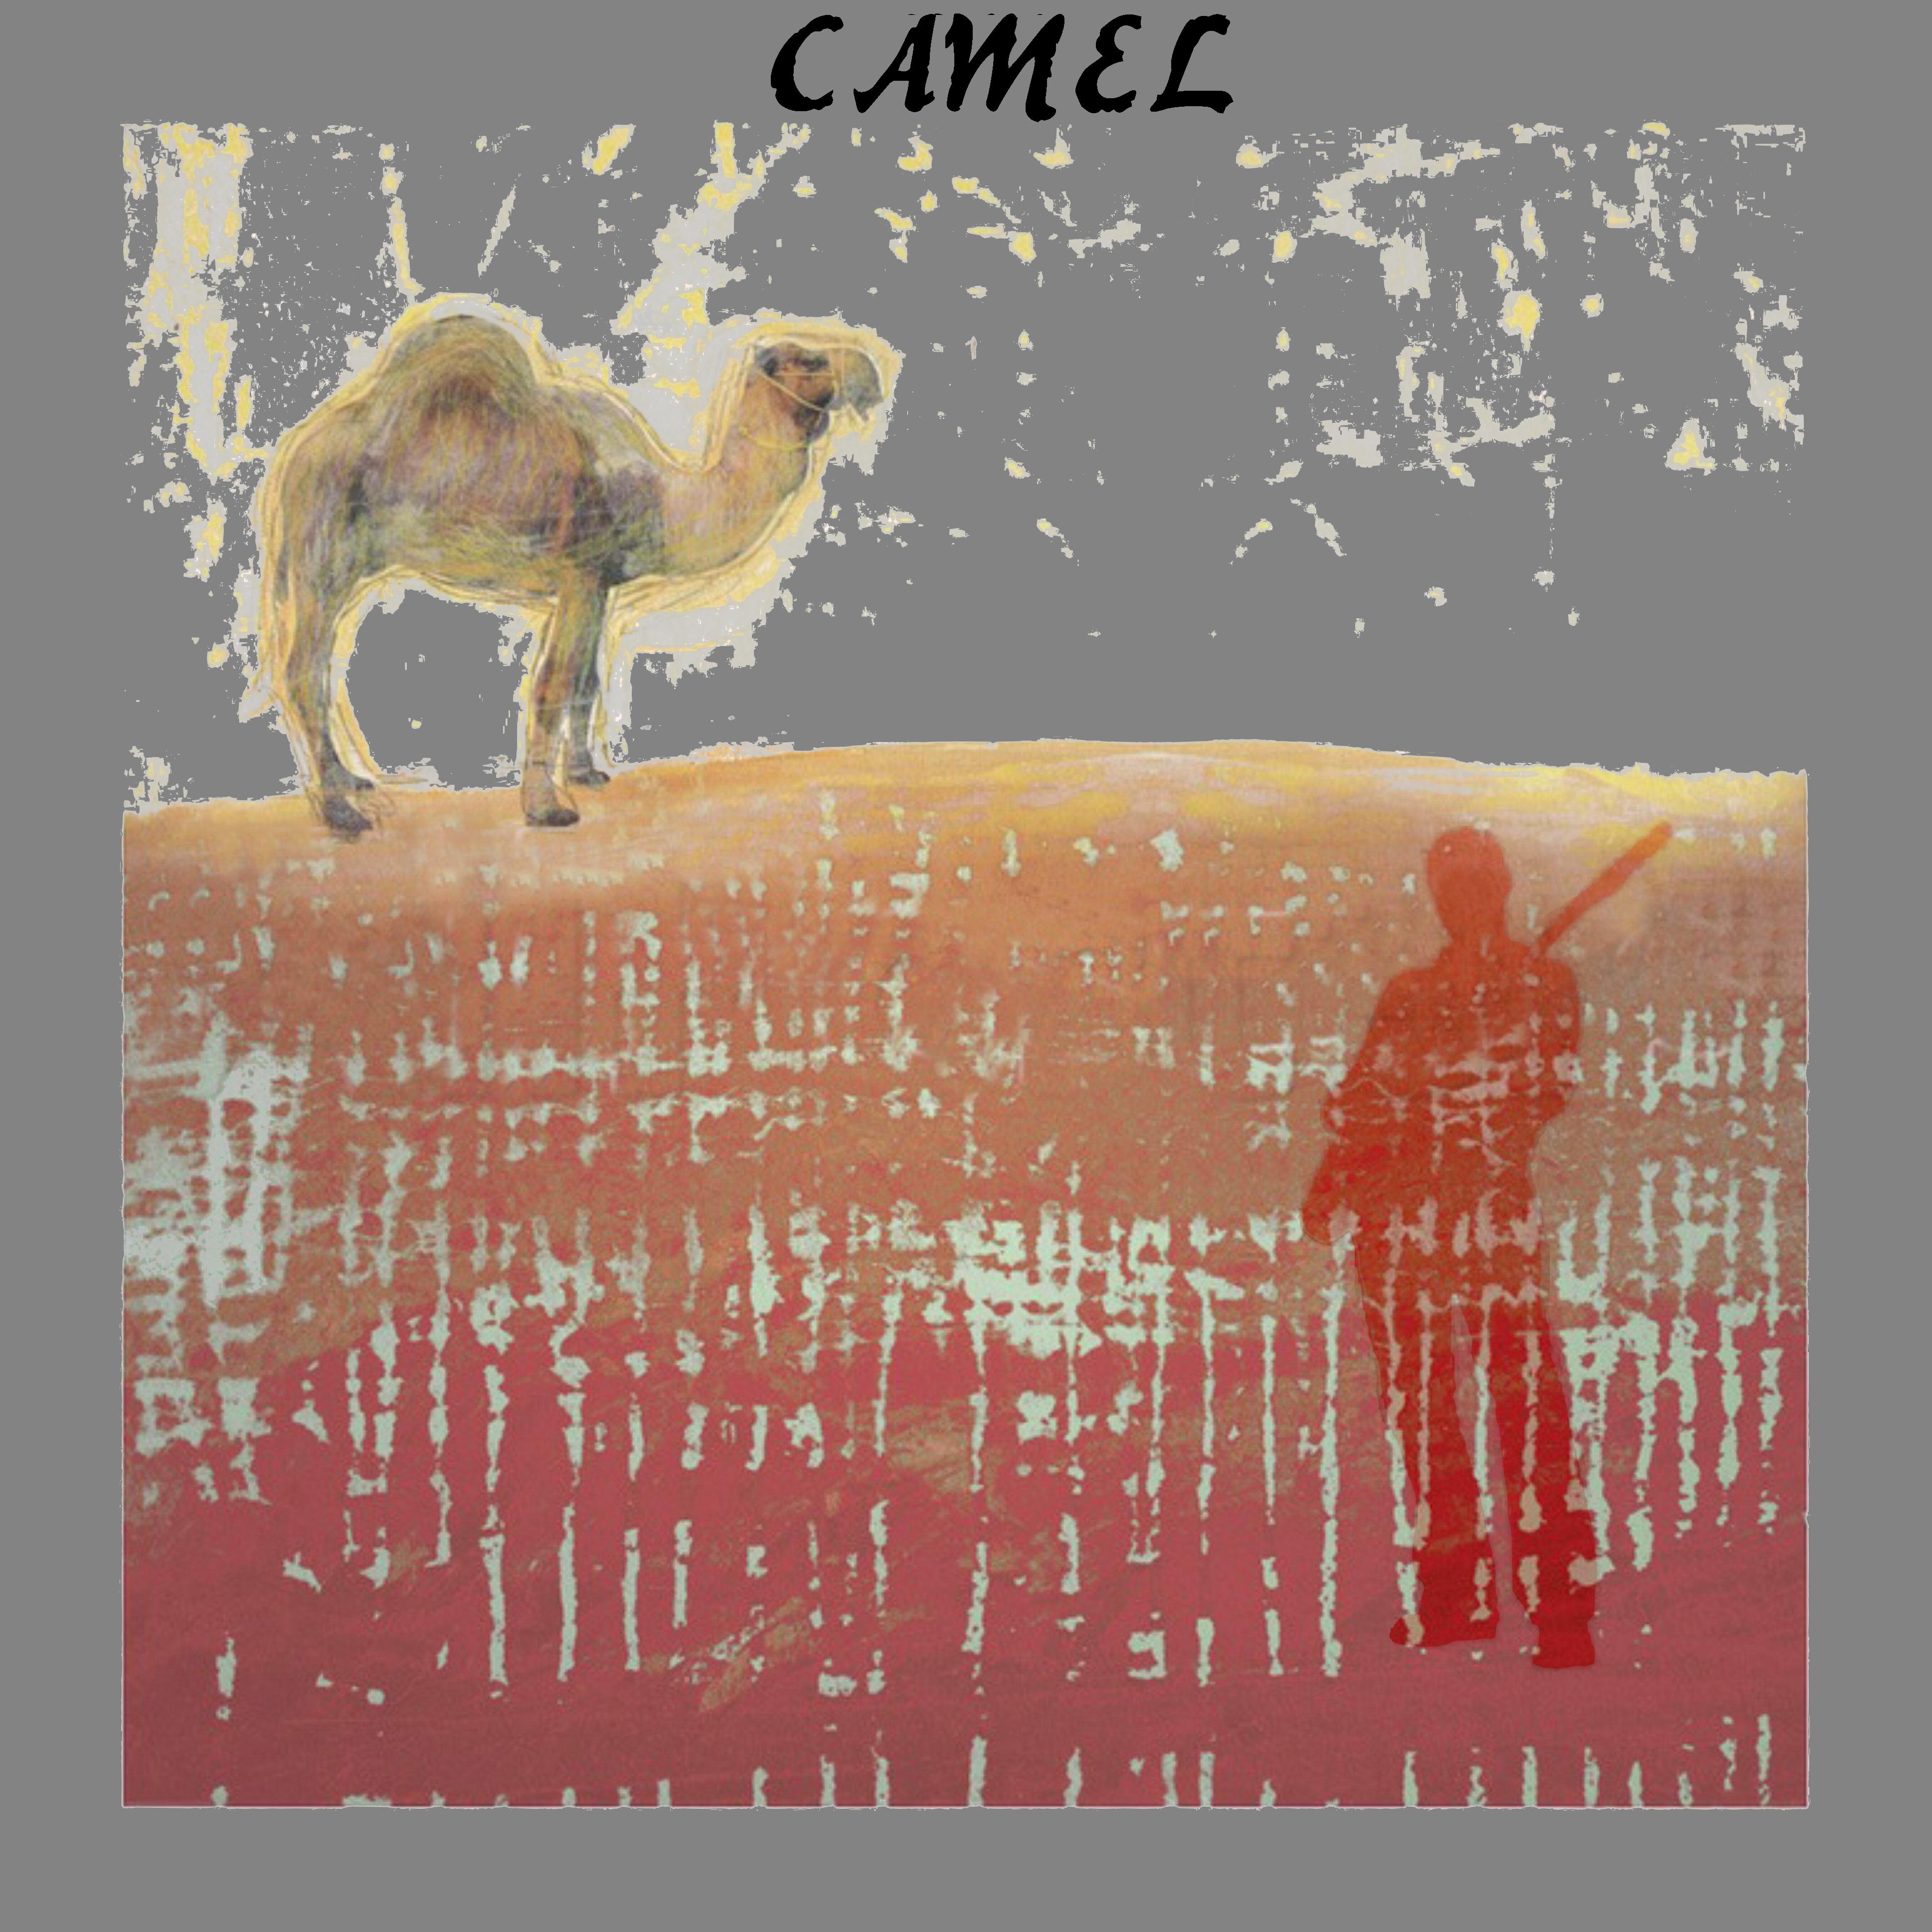 Camel2014-03-04VooruitGentBelgium (2).jpg